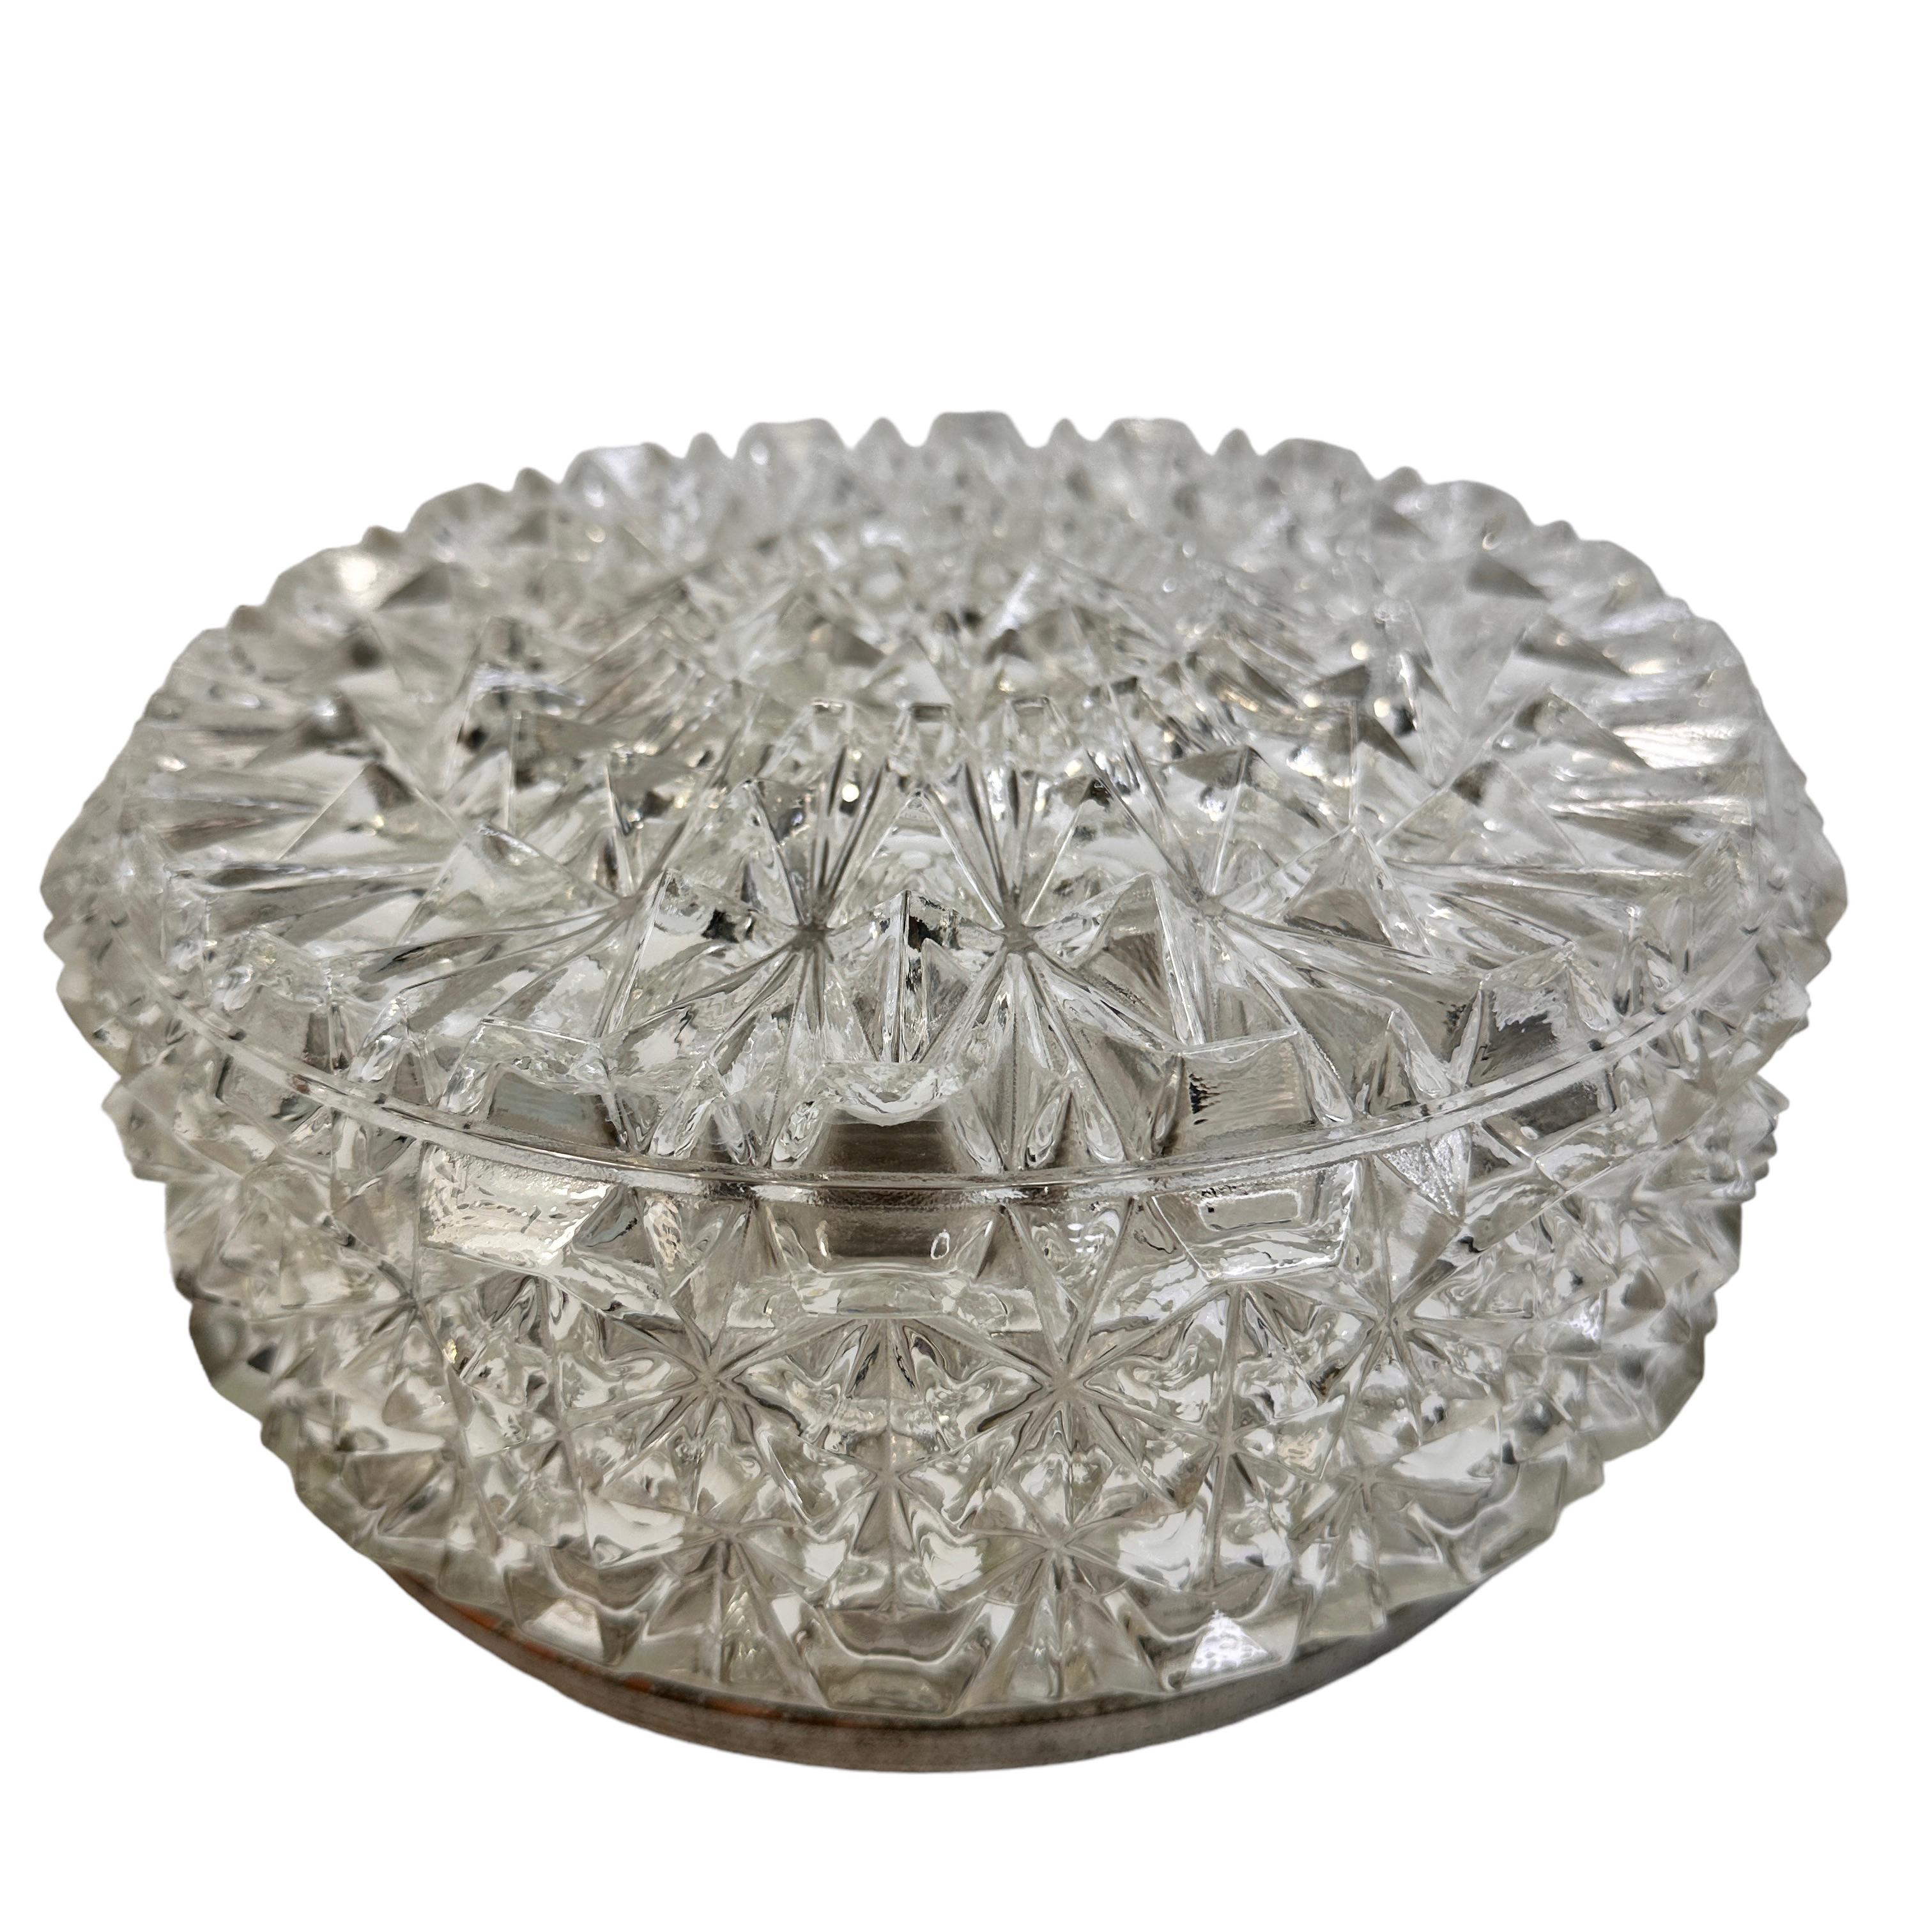 Schöne Eiskristall Form bündig montieren. Hergestellt in Deutschland in den 1960er Jahren. Wunderschöne Unterputzleuchte aus strukturiertem Glas mit Metallhalterung. Das Glas hat ein sehr hübsches Design. Die Leuchte benötigt eine europäische E27 /